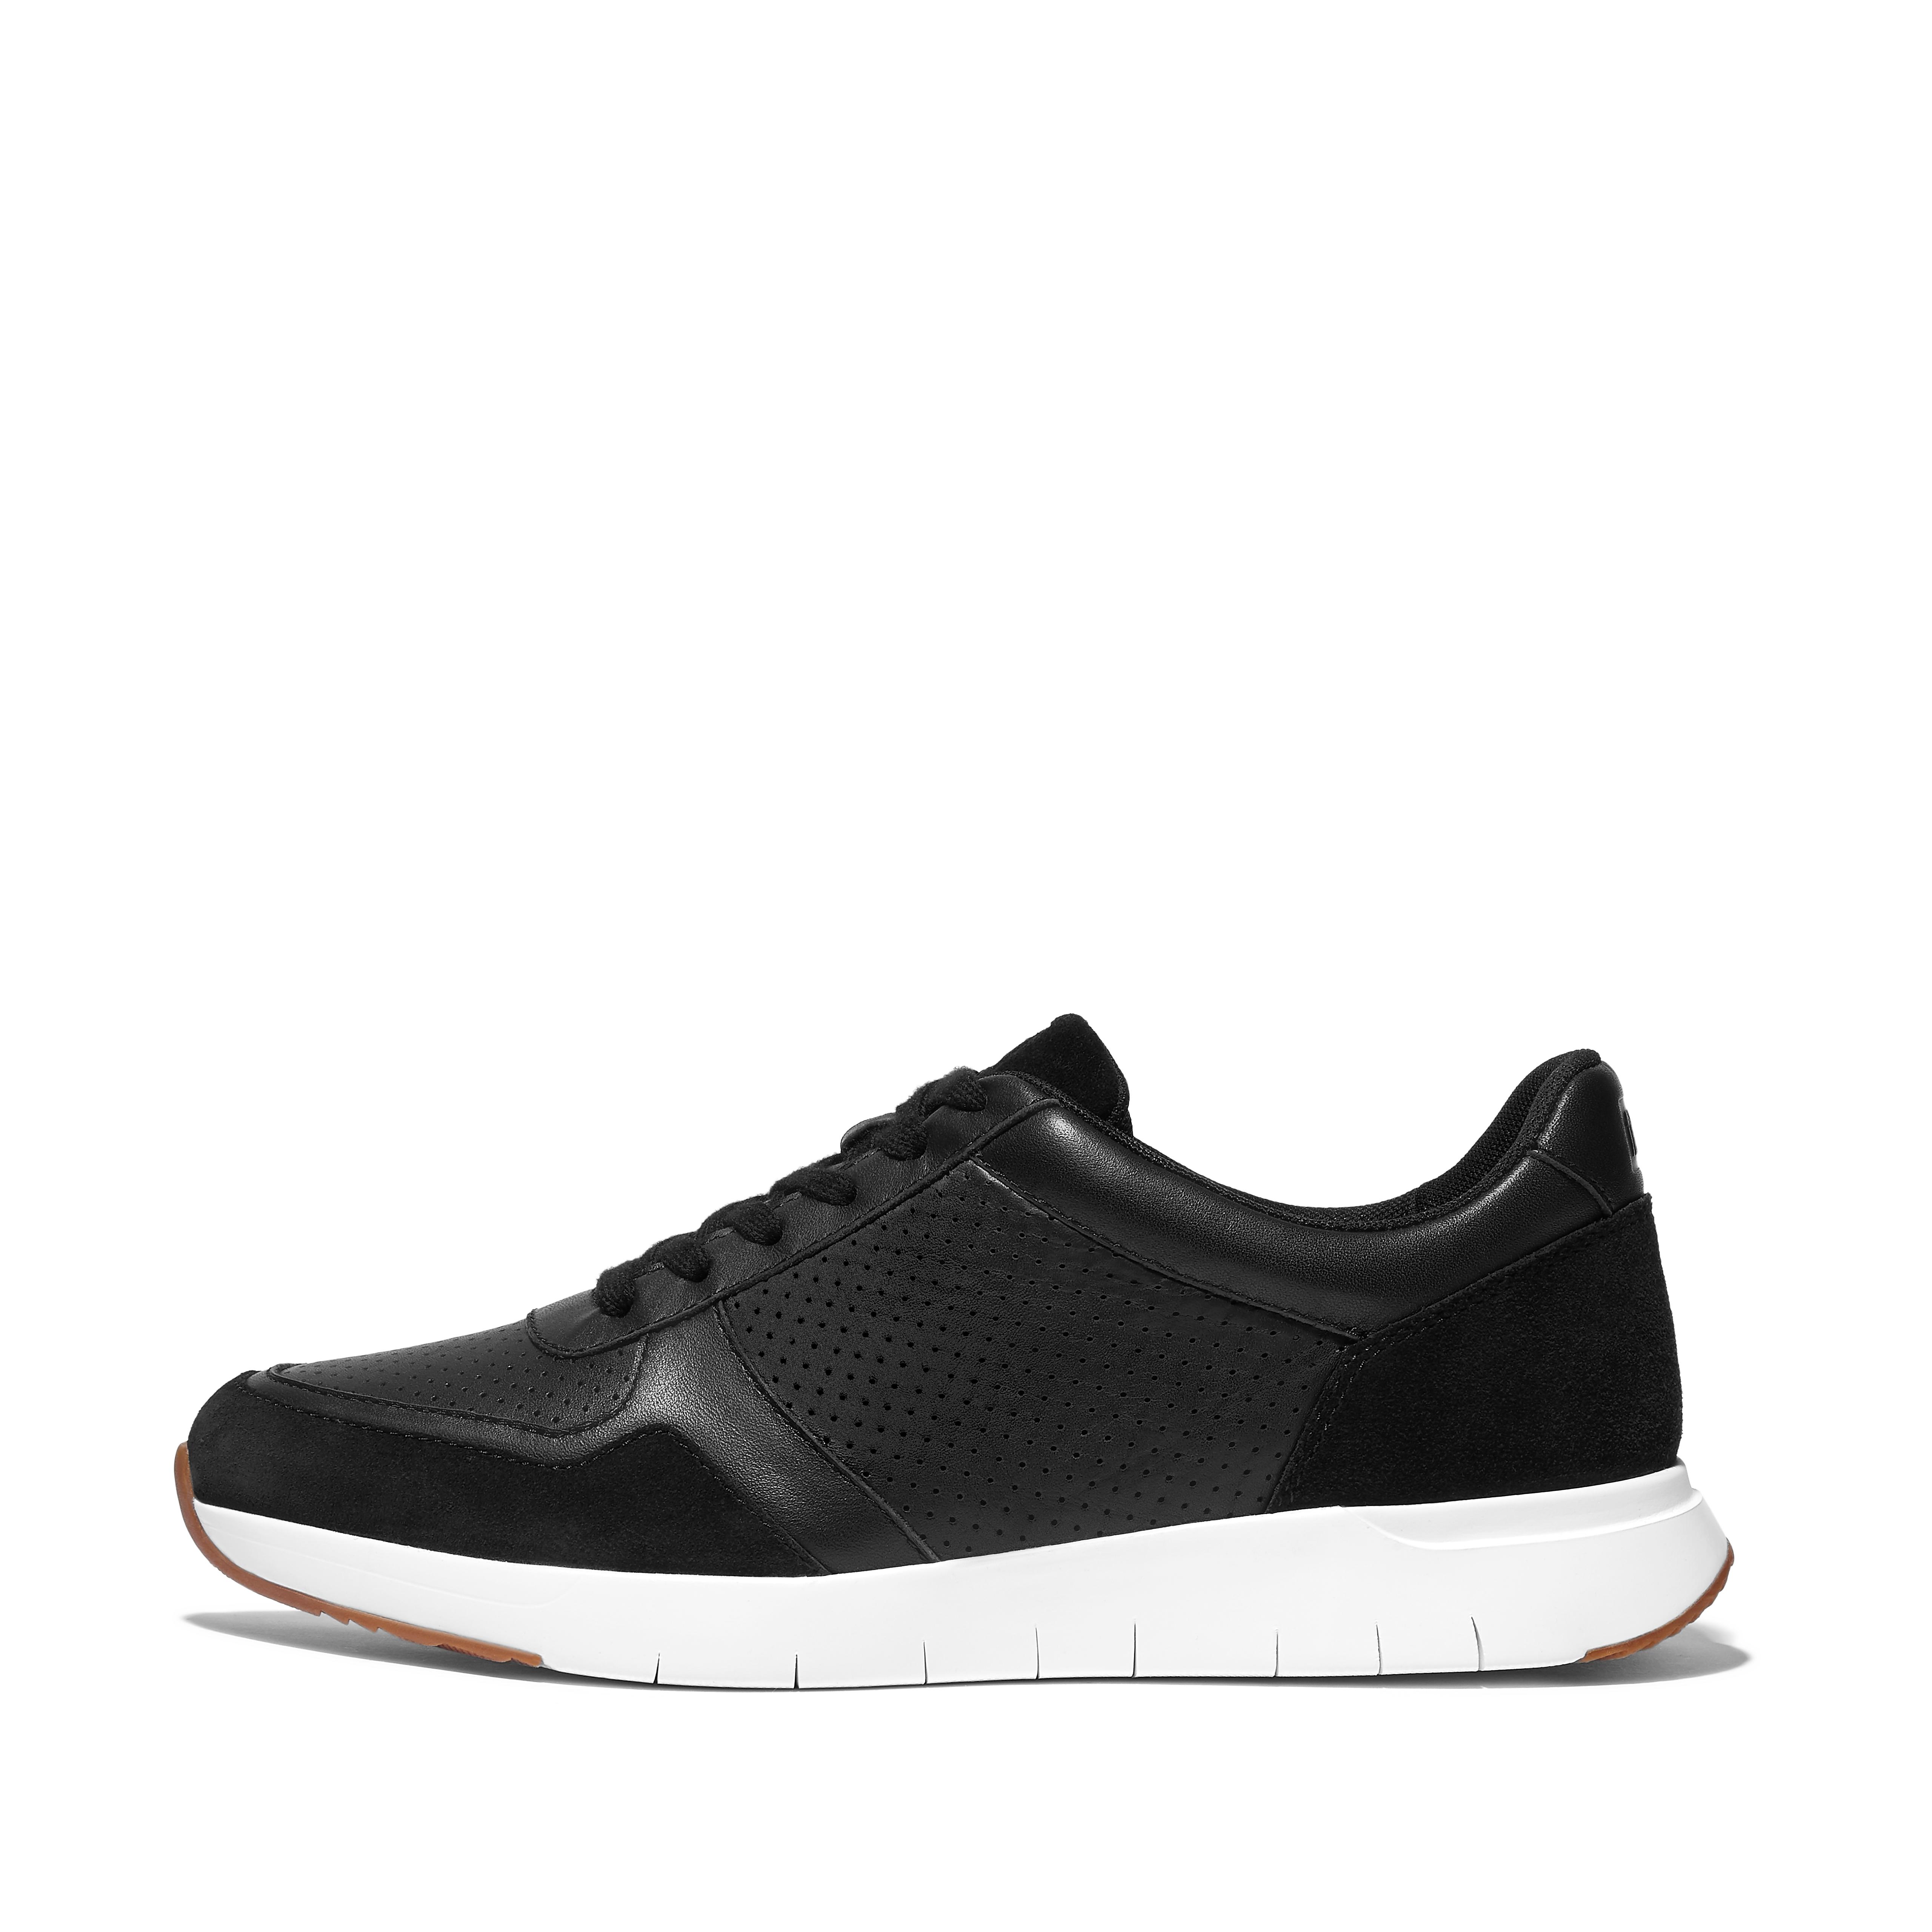 핏플랍 스니커즈 핏플랍 Fitflop Leather-Mix Sneakers,Black